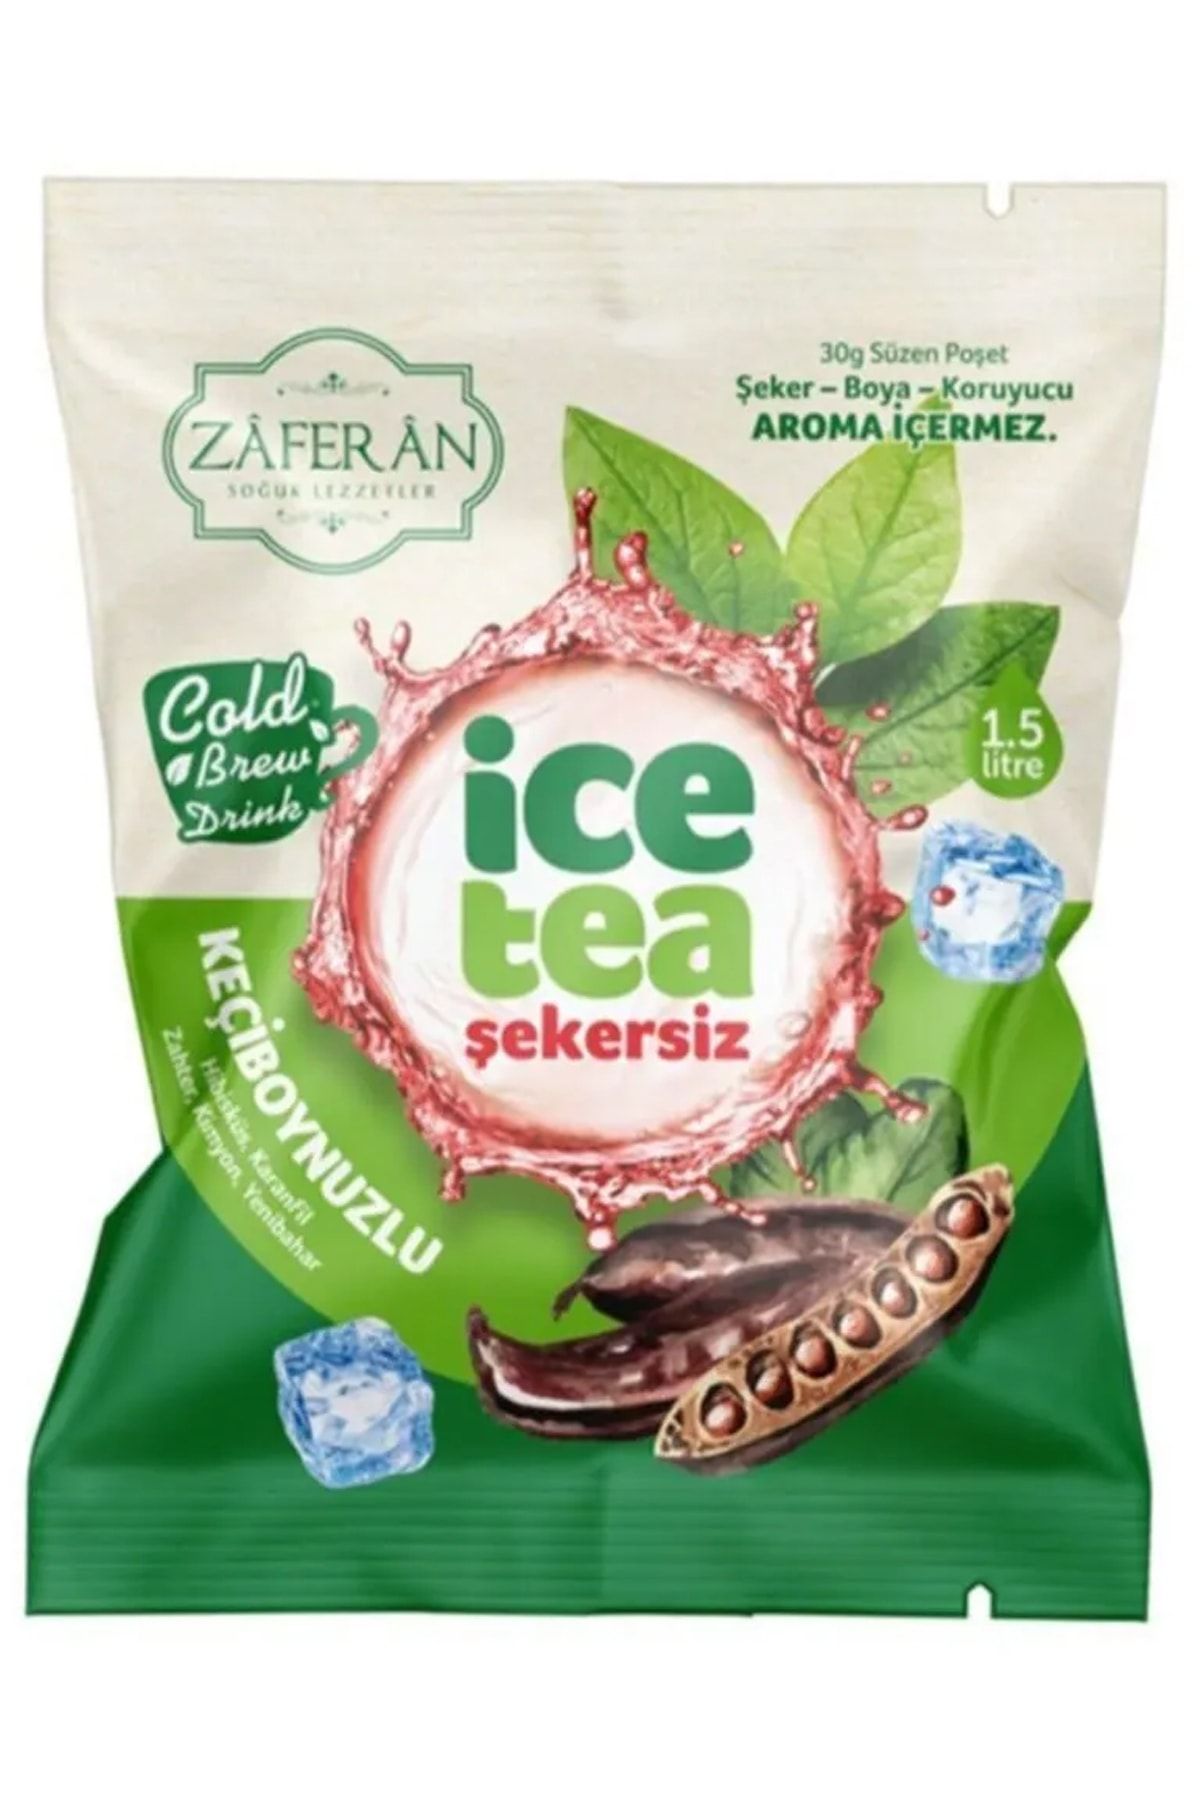 Zaferan Türk Şerbetleri Ice Tea Keçiboynuzlu 1.5 Lt. Soğuk Çay